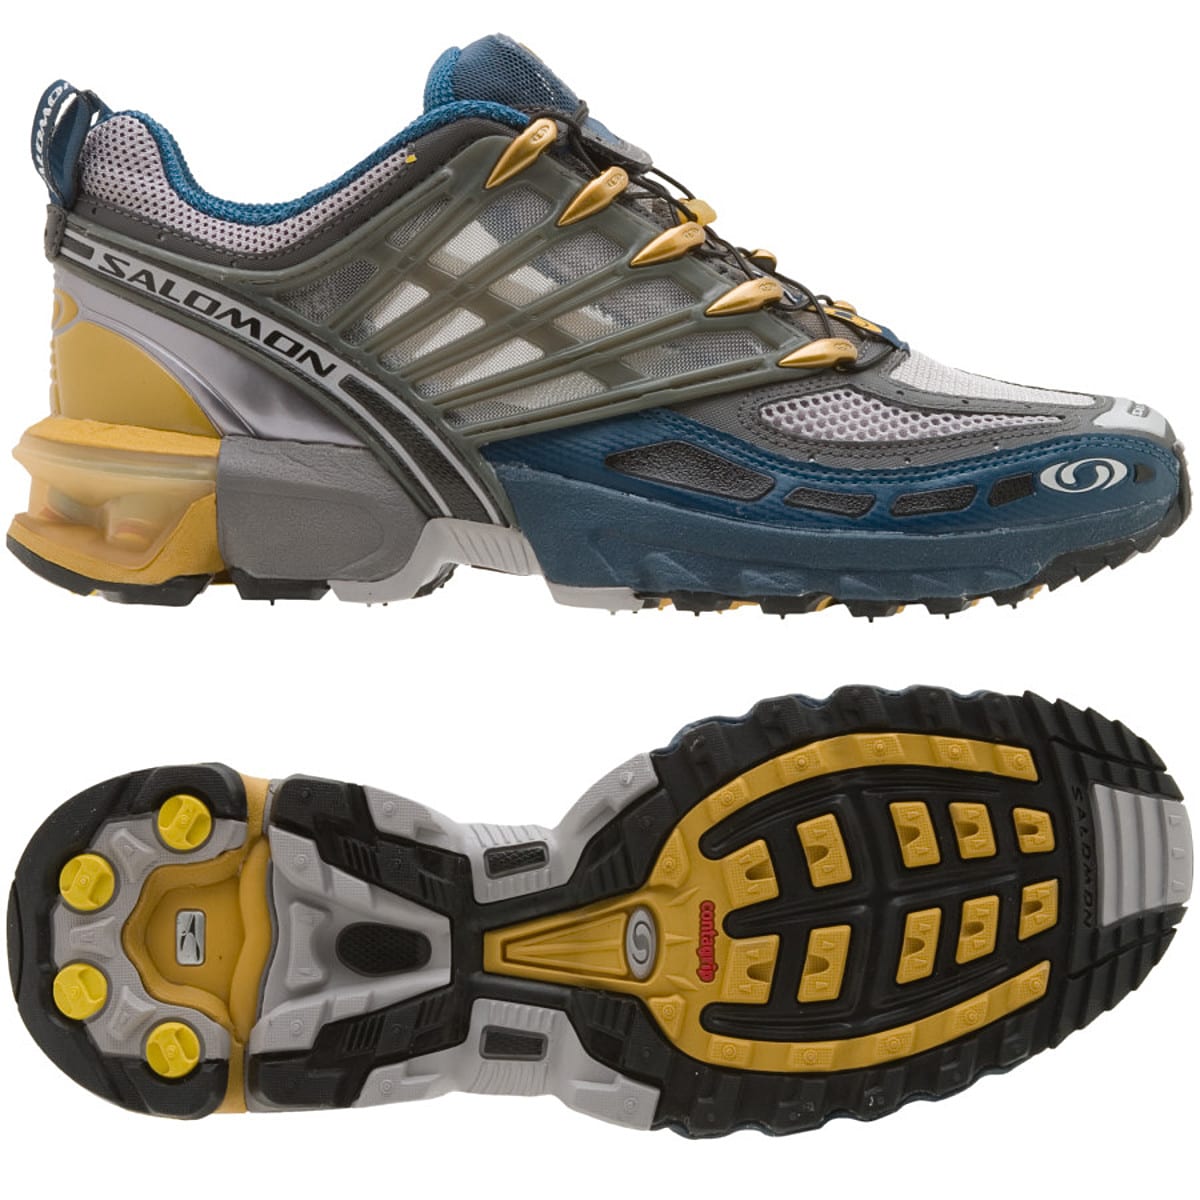 Salomon GCS Pro Trail Running Shoe - Men's - Footwear